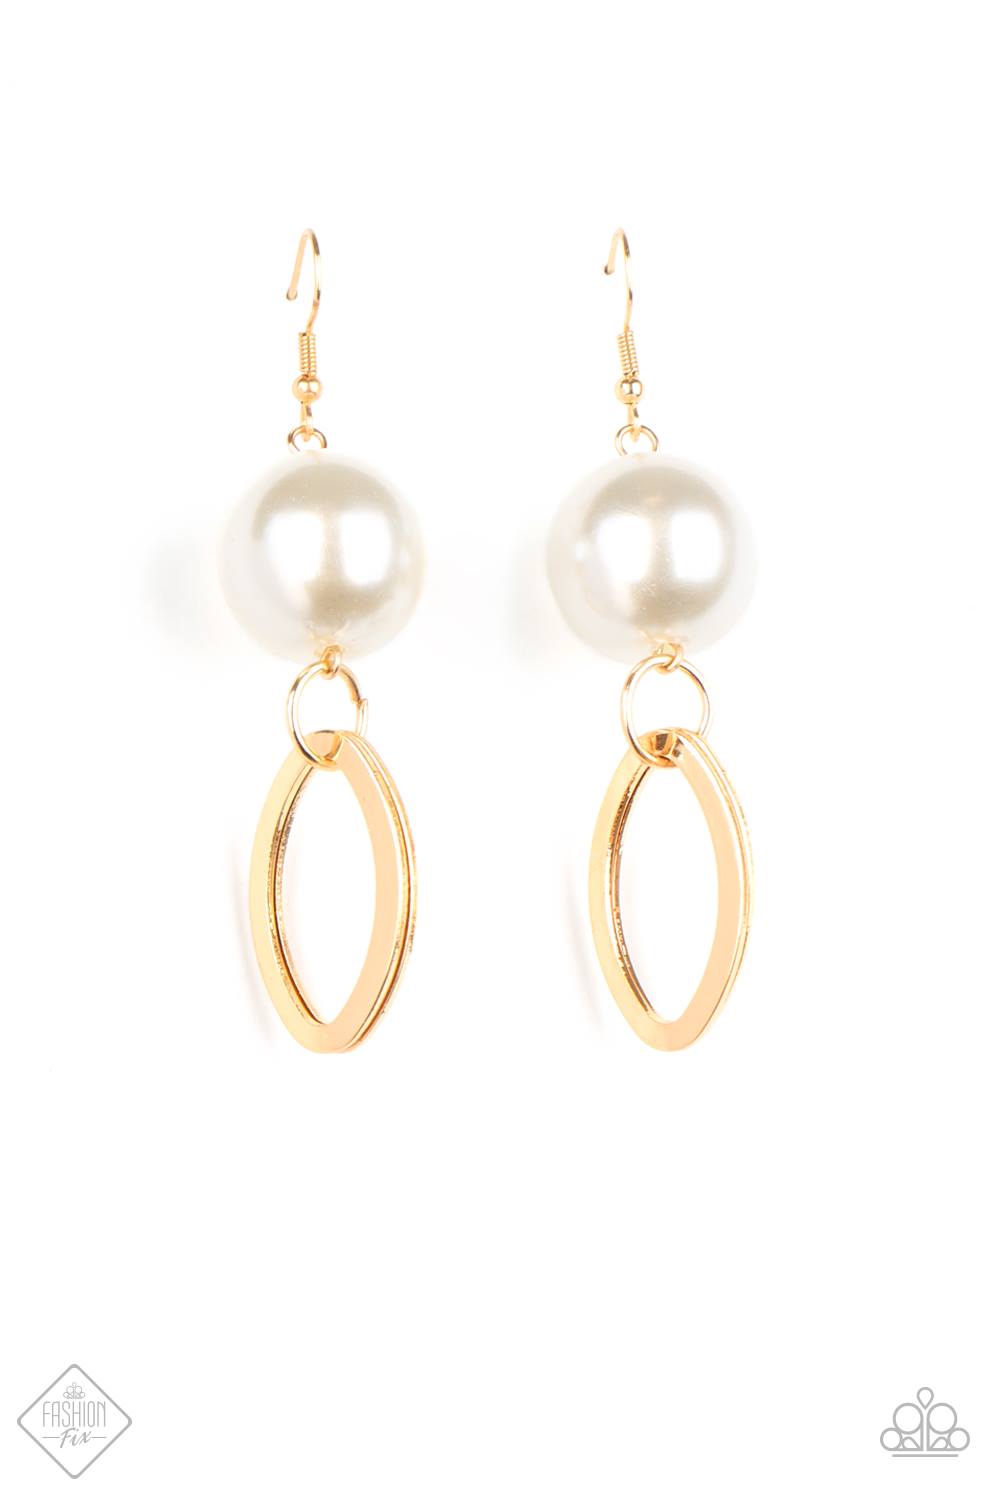 Big Spender Shimmer - Gold Earrings